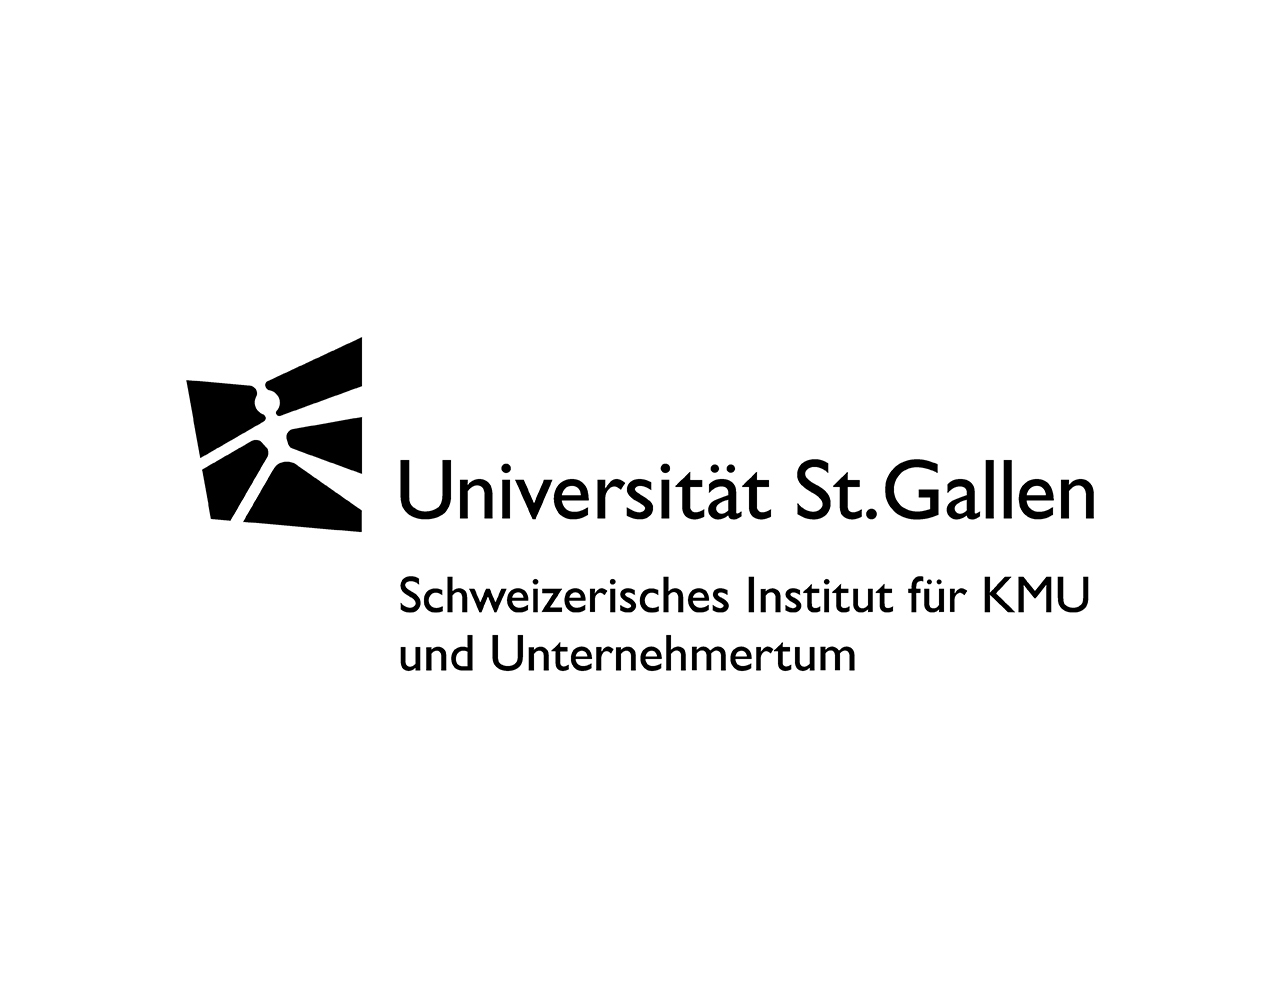 Die Universität St.Gallen – Hochschule für Wirtschafts-, Rechts- und Sozialwissenschaften, Internationale Beziehungen und Informatik.